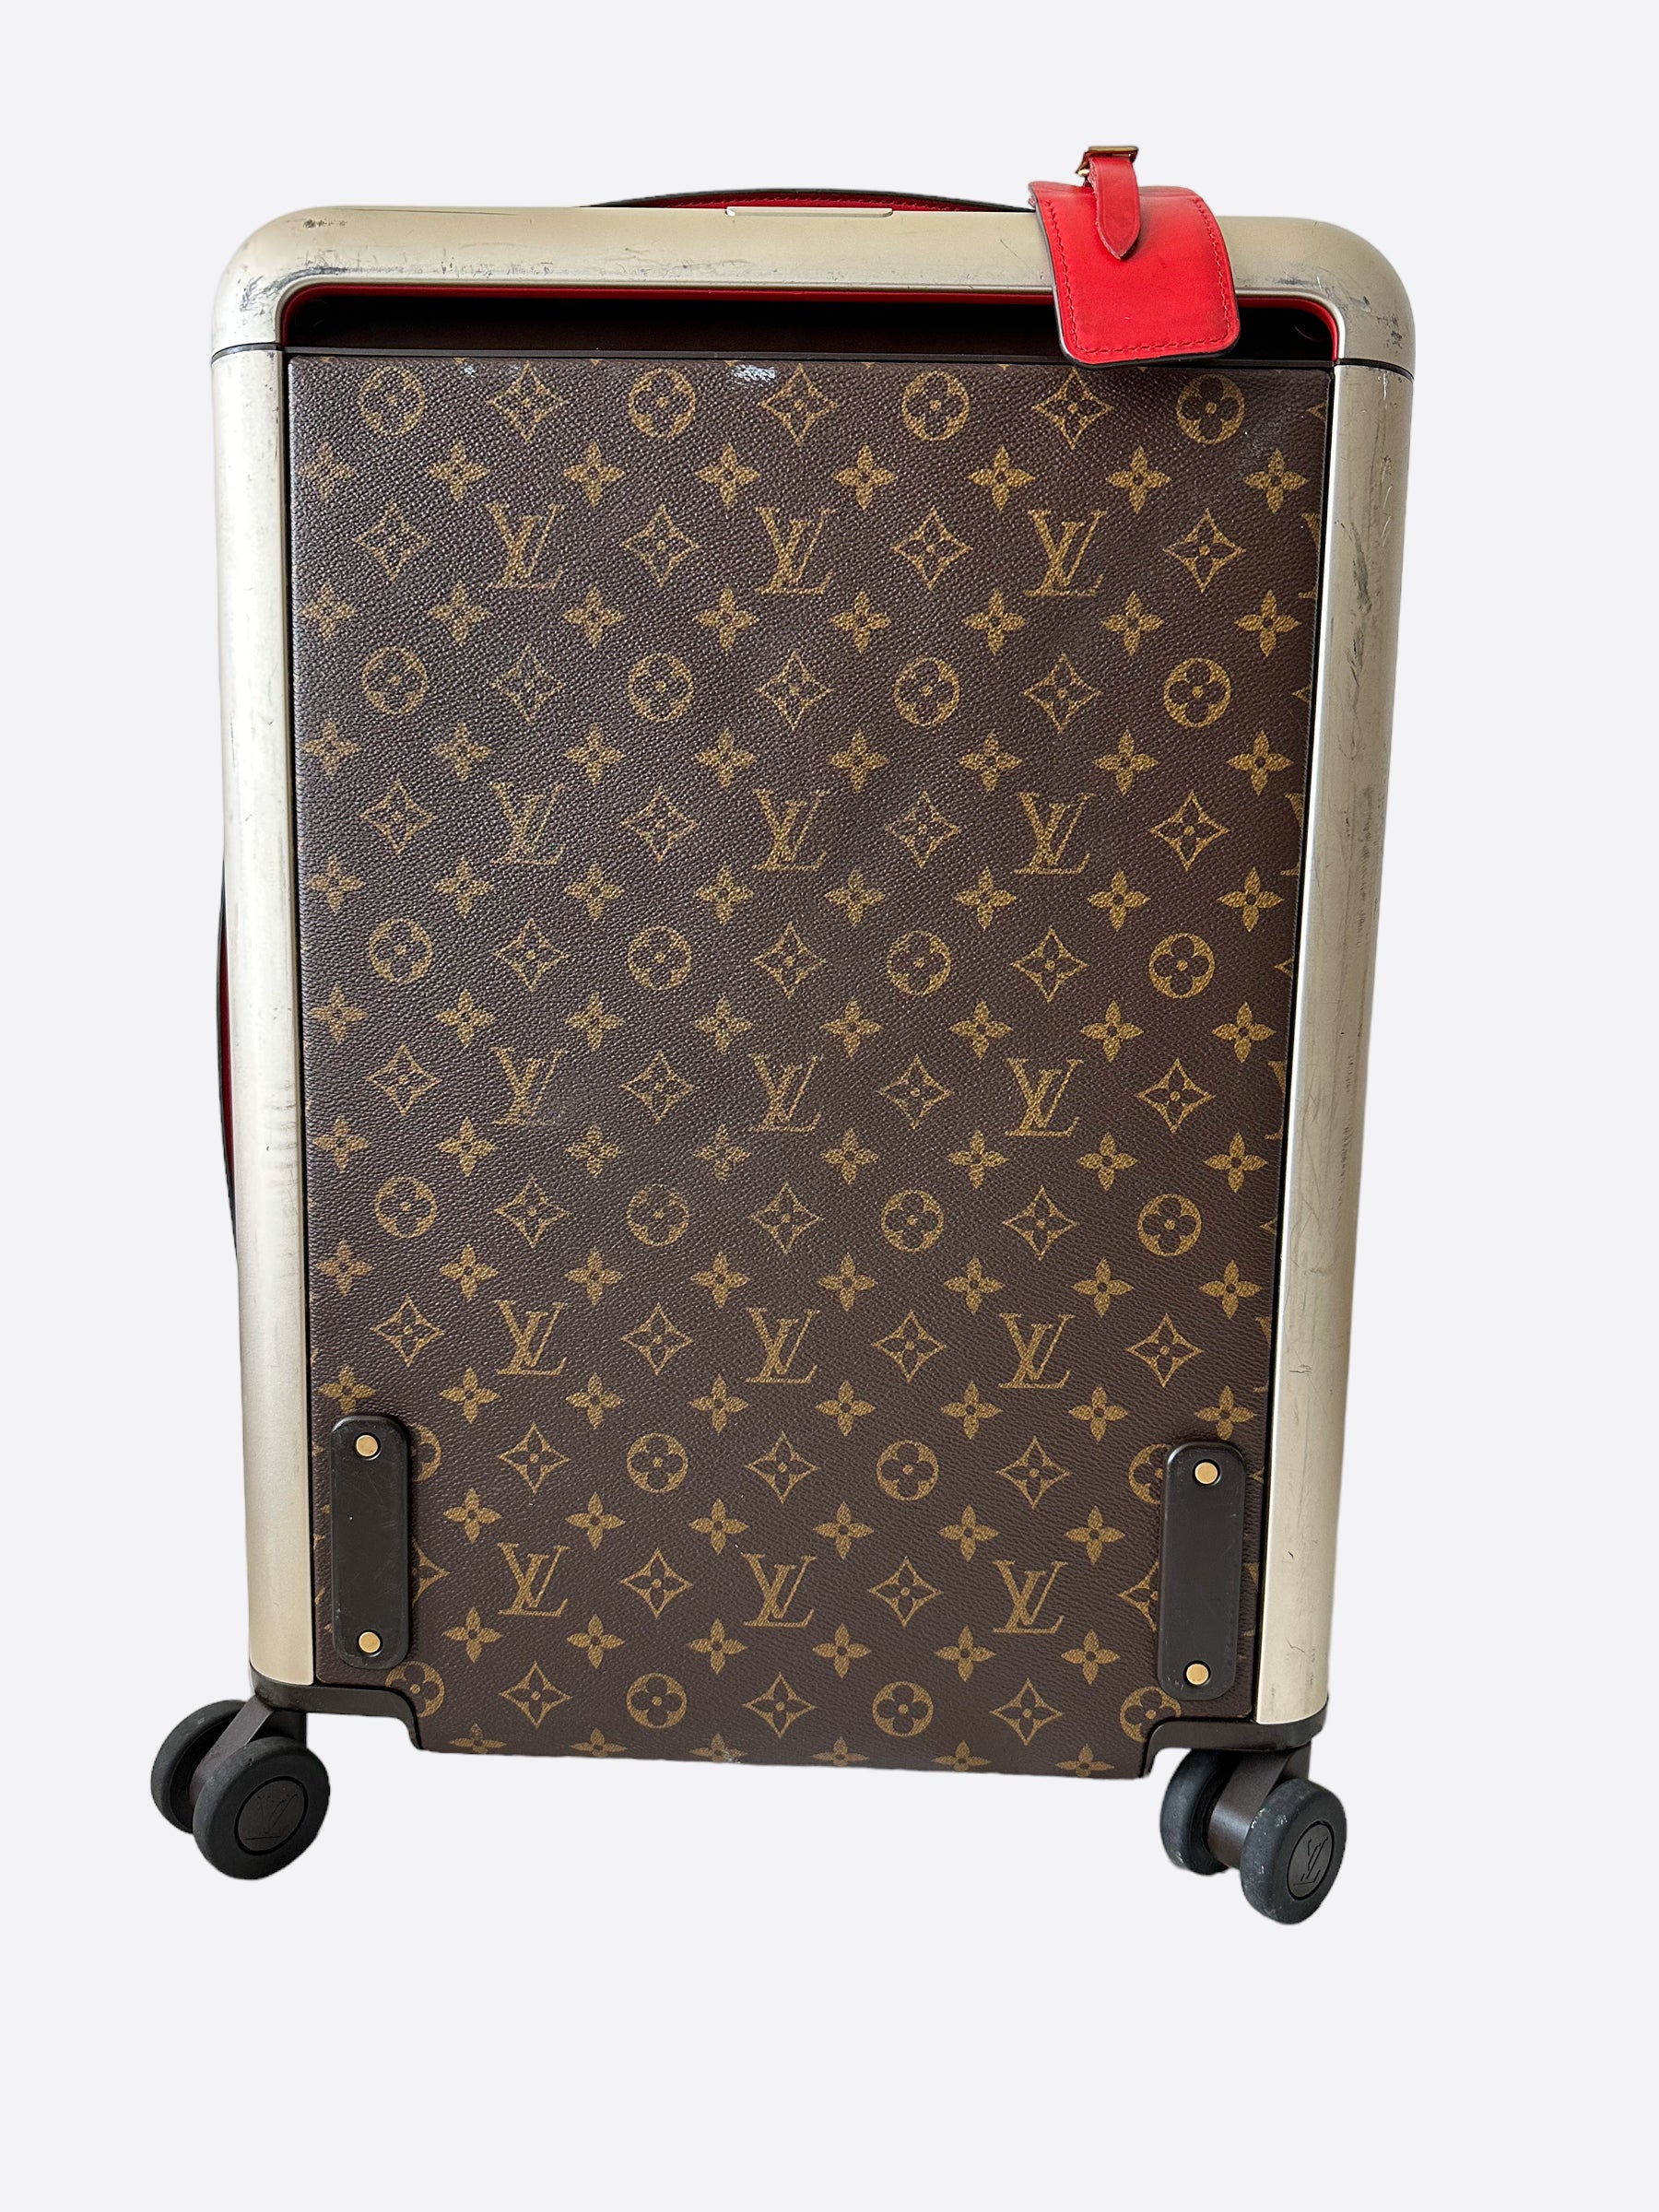 Louis Vuitton Horizon 55: this Louis Vuitton luggage is the